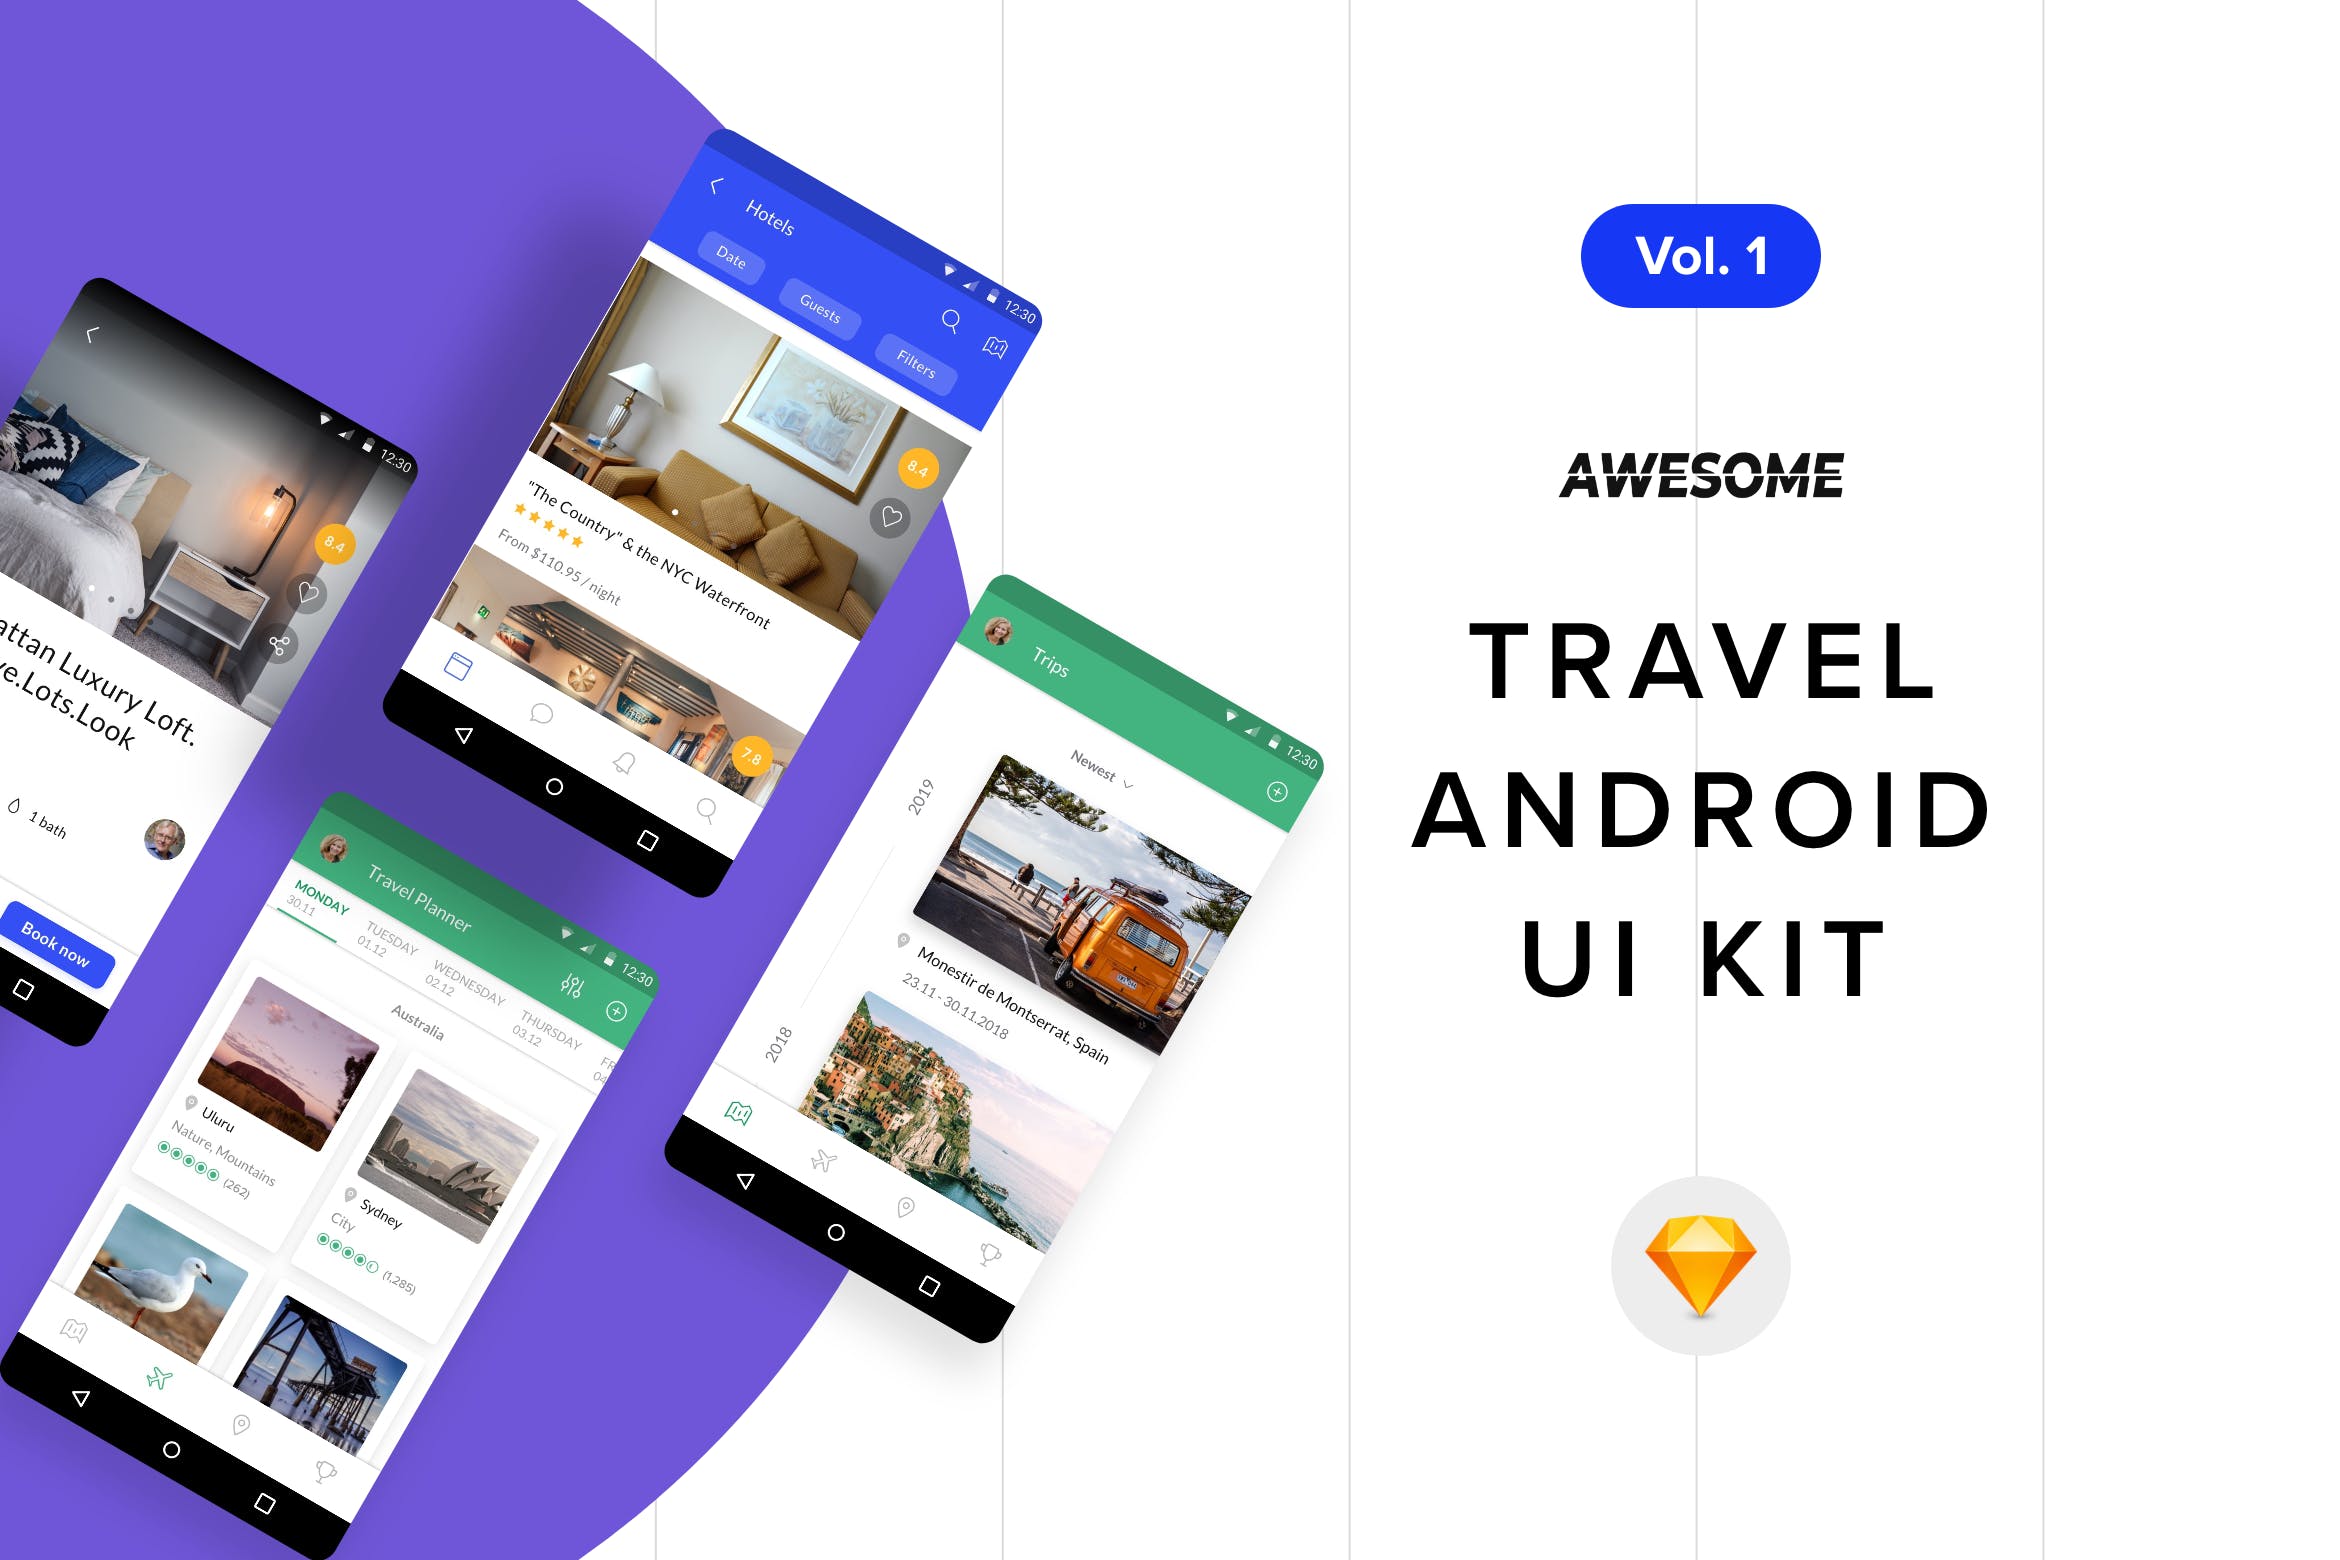 安卓平台旅游APP应用用户交互界面设计SKETCH模板v1 Android UI Kit – Travel Vol. 1 (Sketch)插图